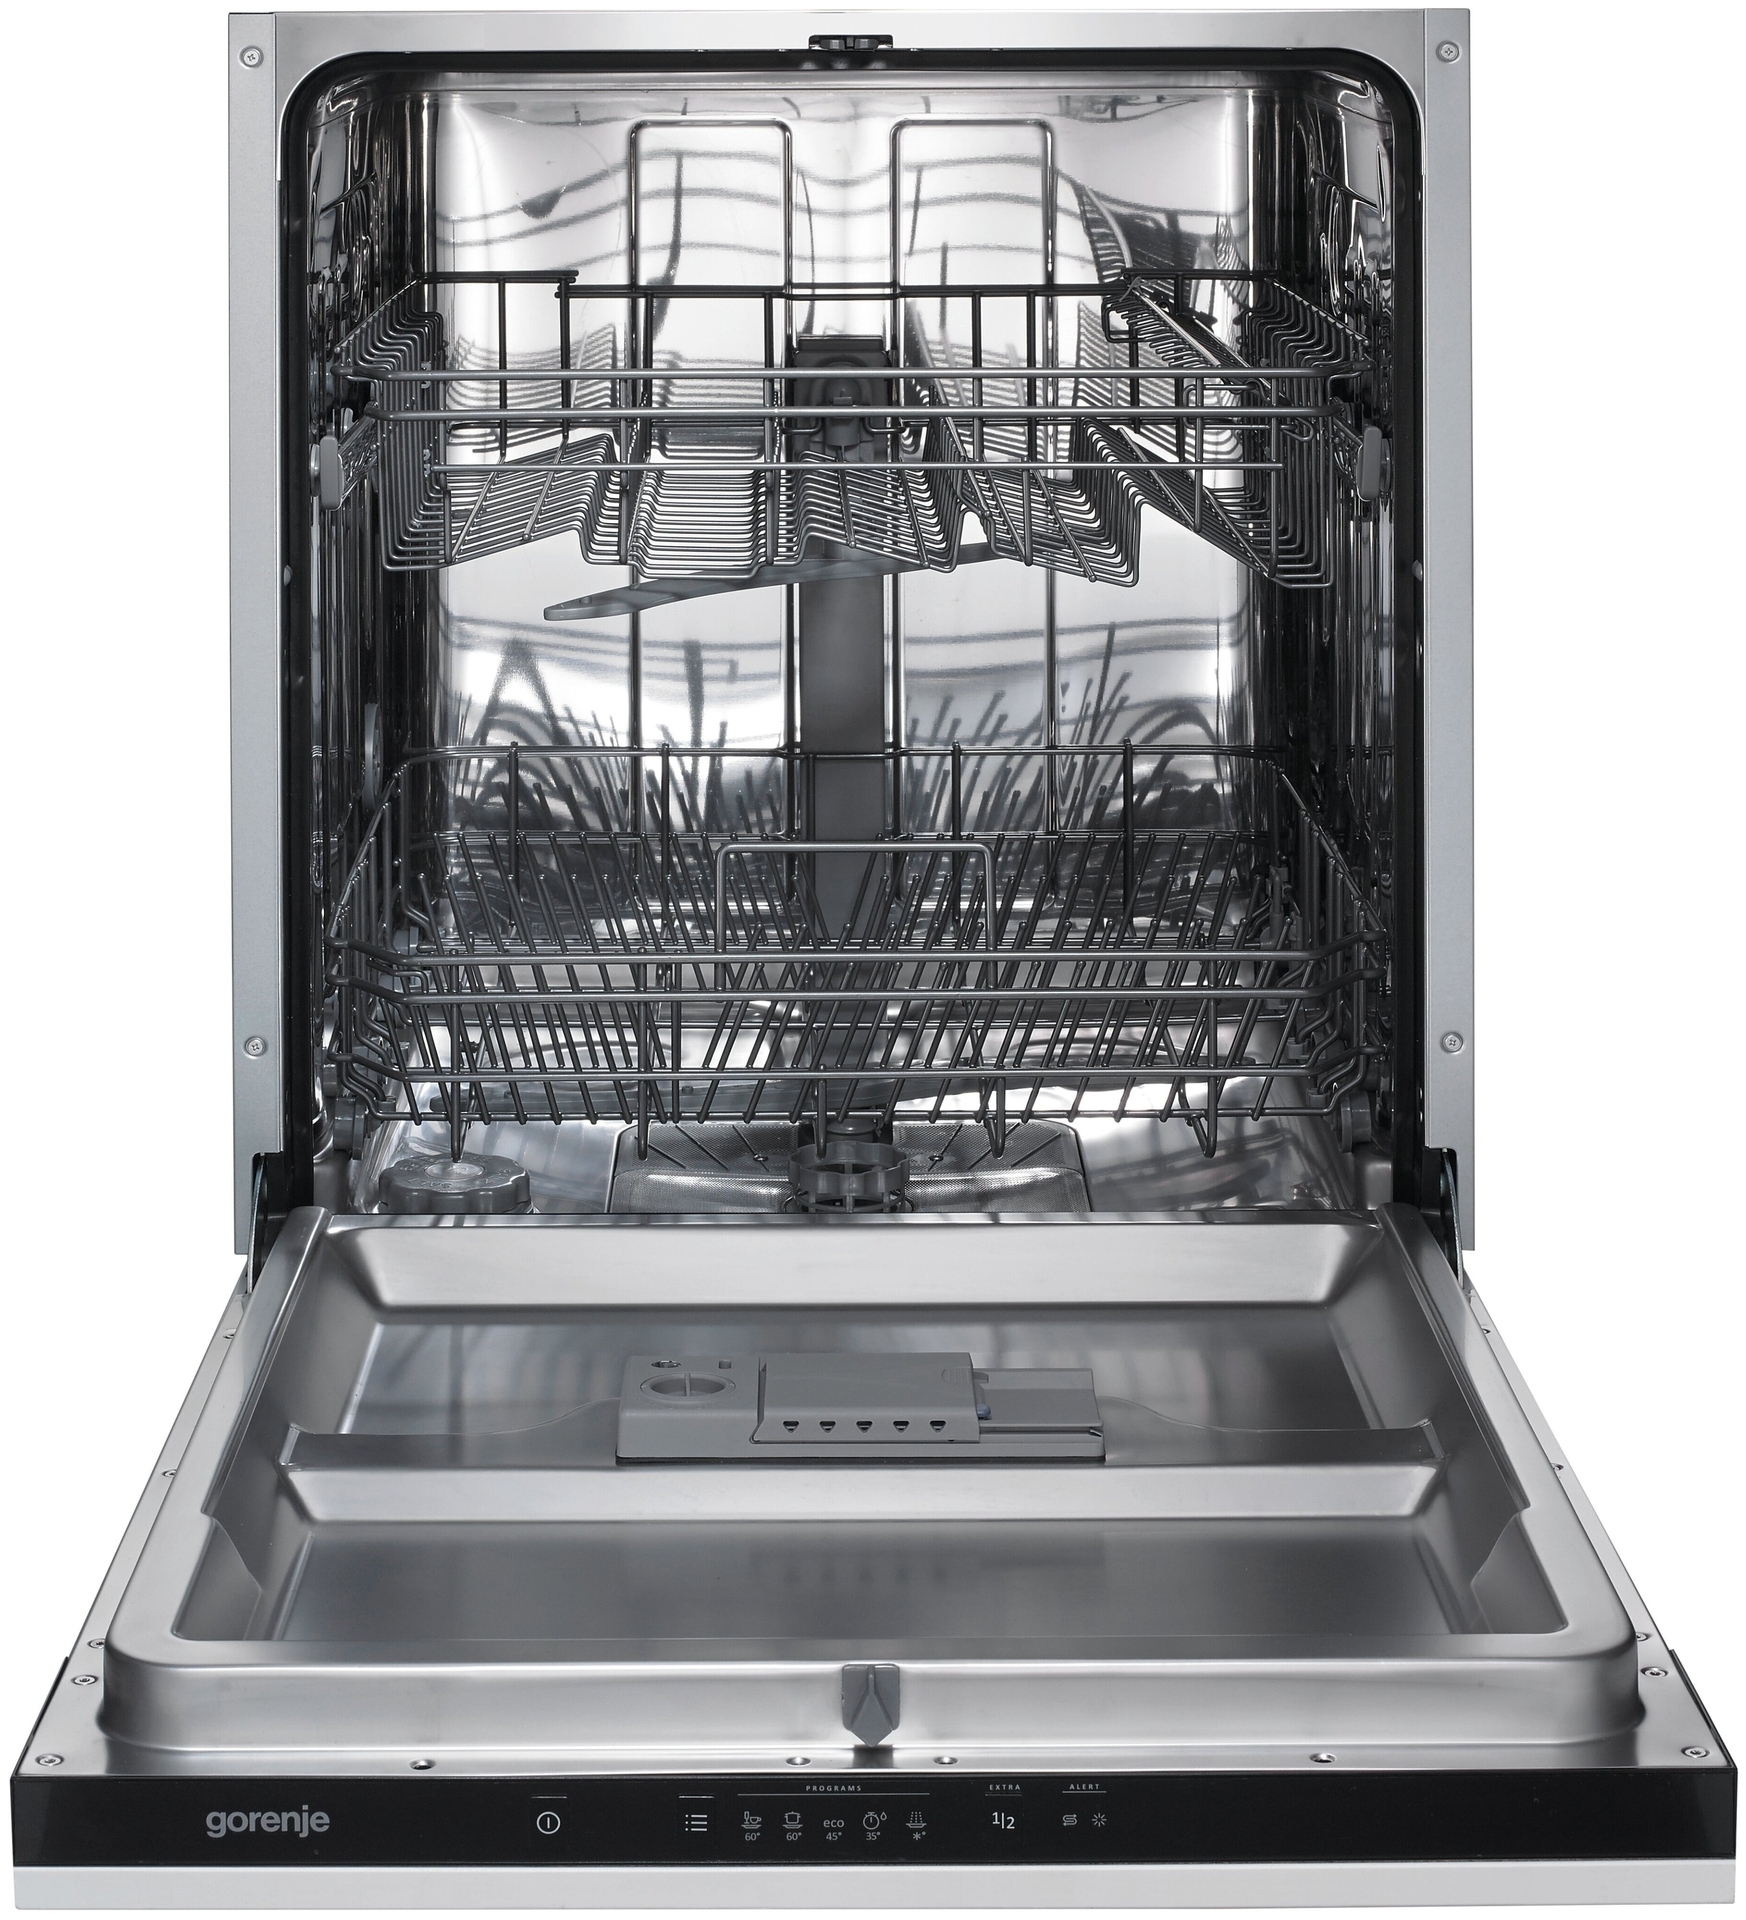 Встроенная посудомоечная машина 60 см горенье. Встраиваемая посудомоечная машина Gorenje gv62010. Посудомоечная машина Gorenje gv62011. Посудомоечная машина Gorenje gv62010. Посудомоечная машина Gorenje gv62012.